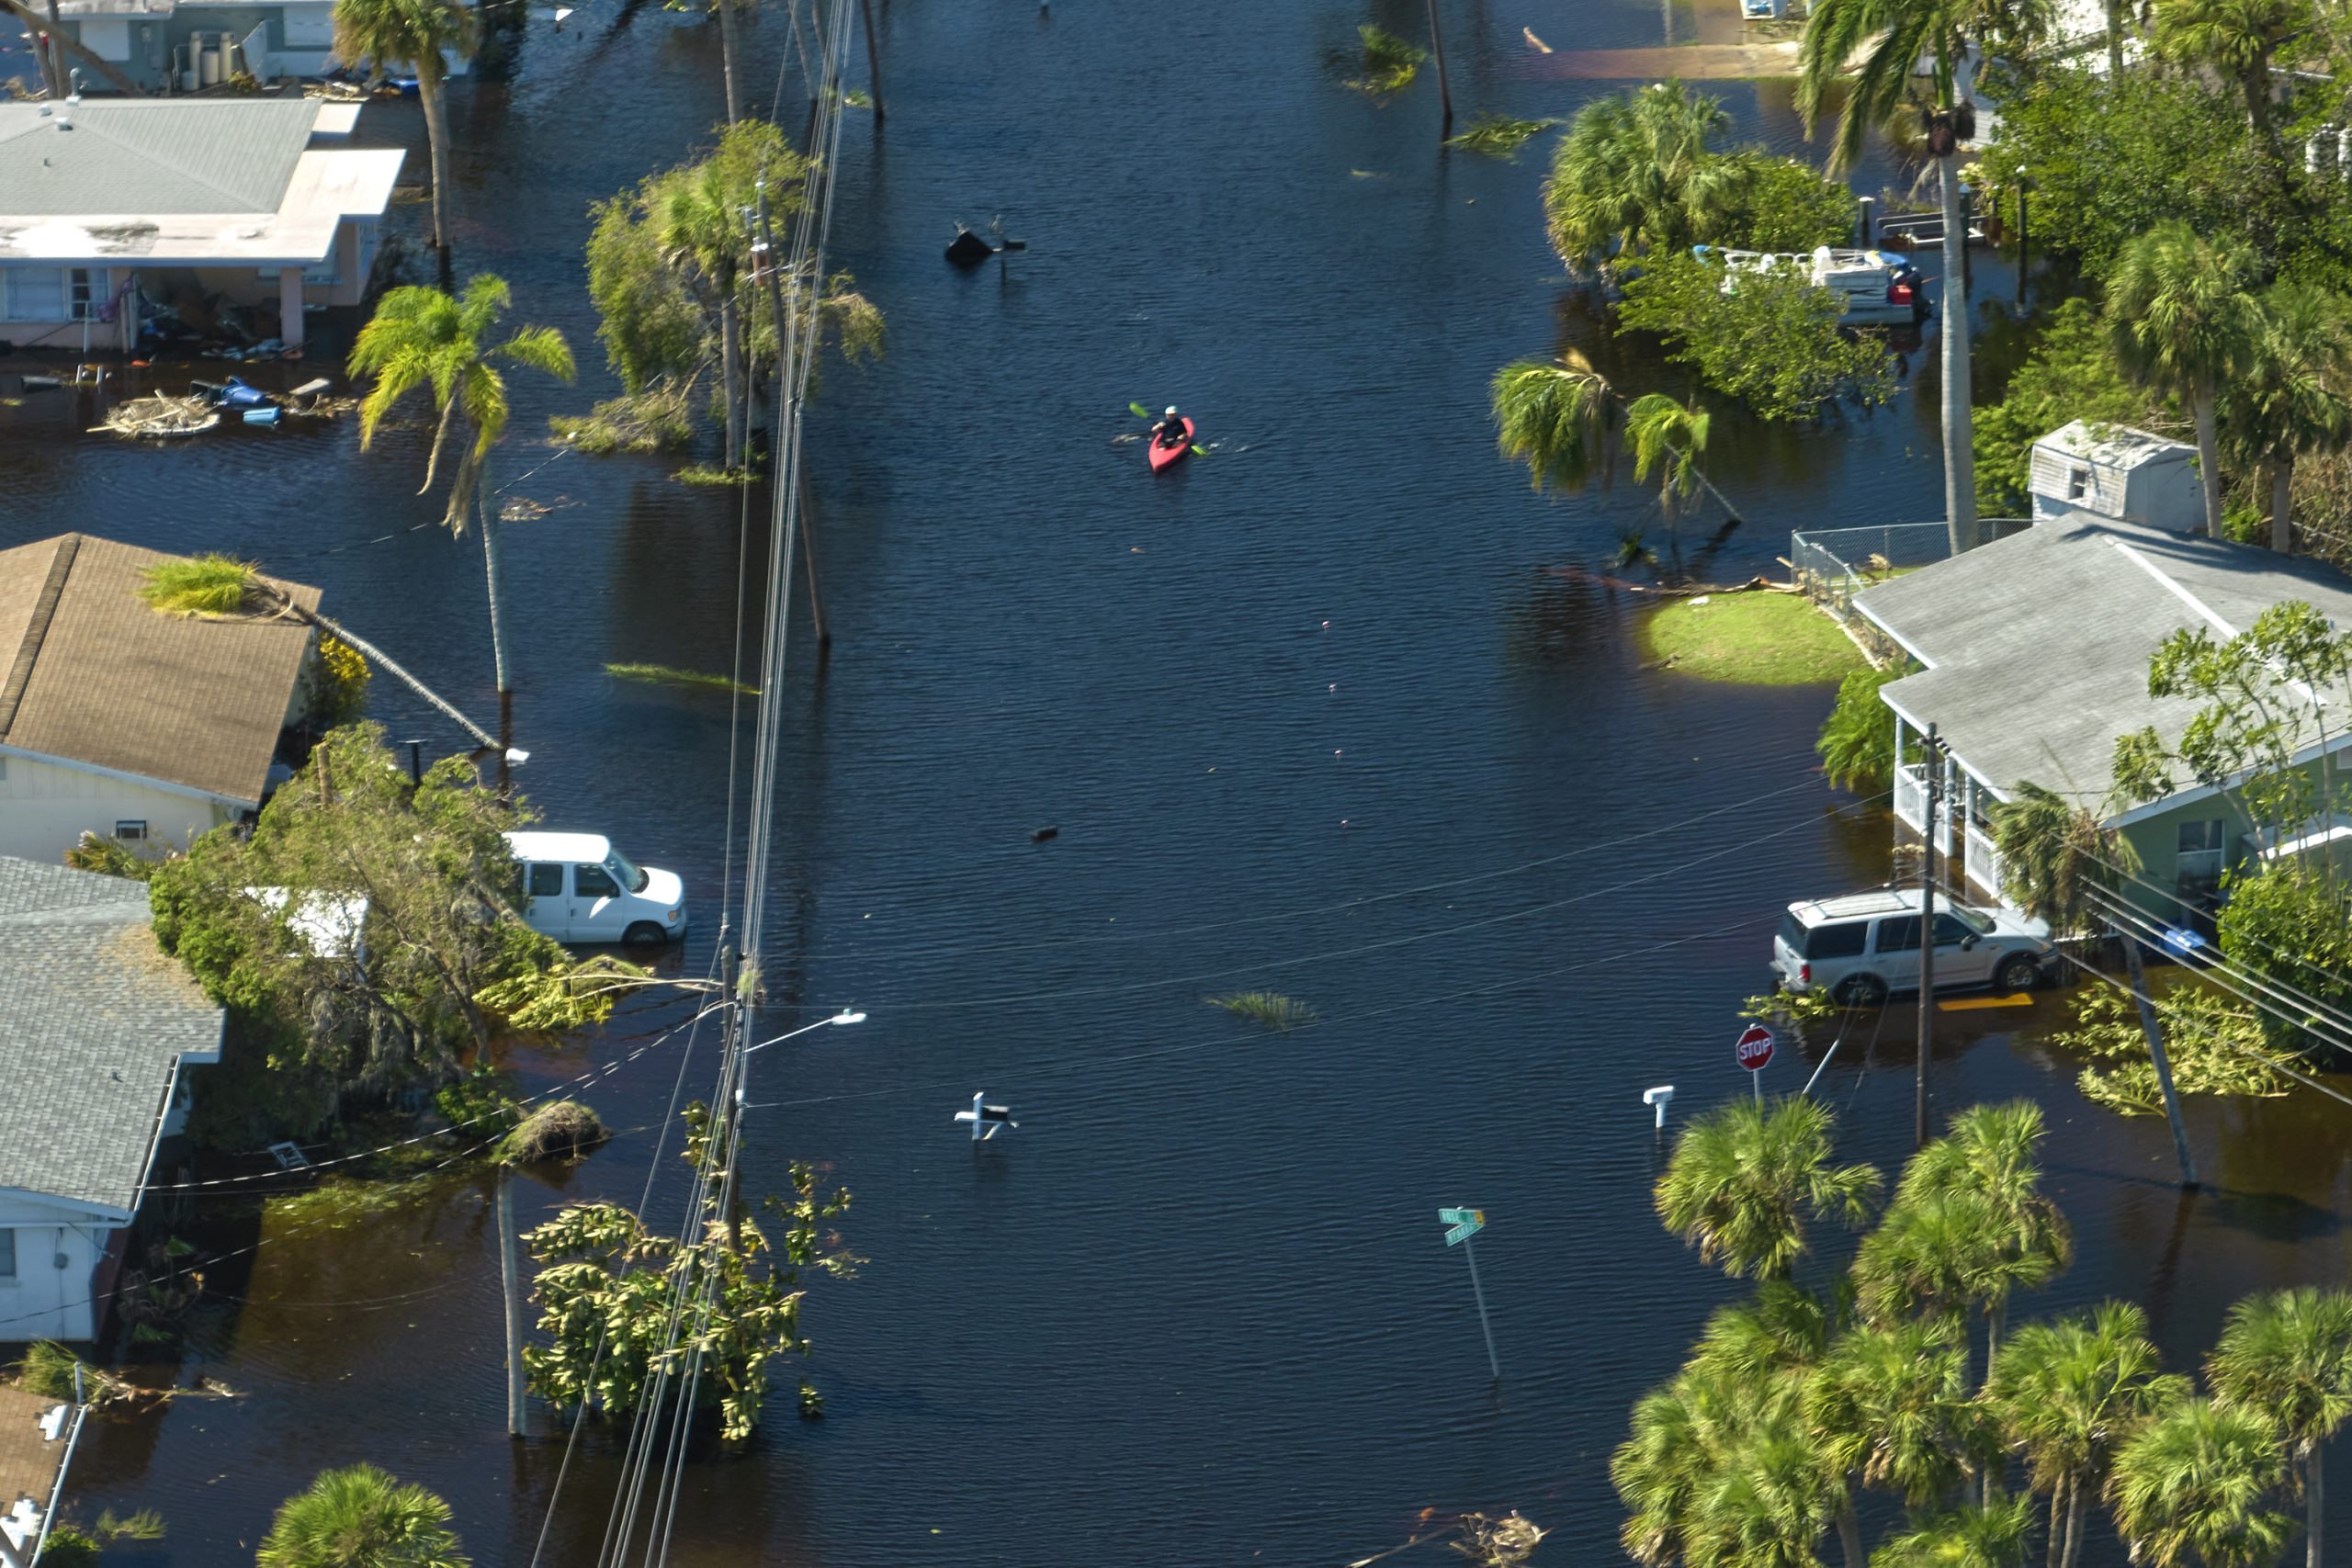 Dos personas en un kayak reman por una calle inundada, con árboles y casas a ambos lados.